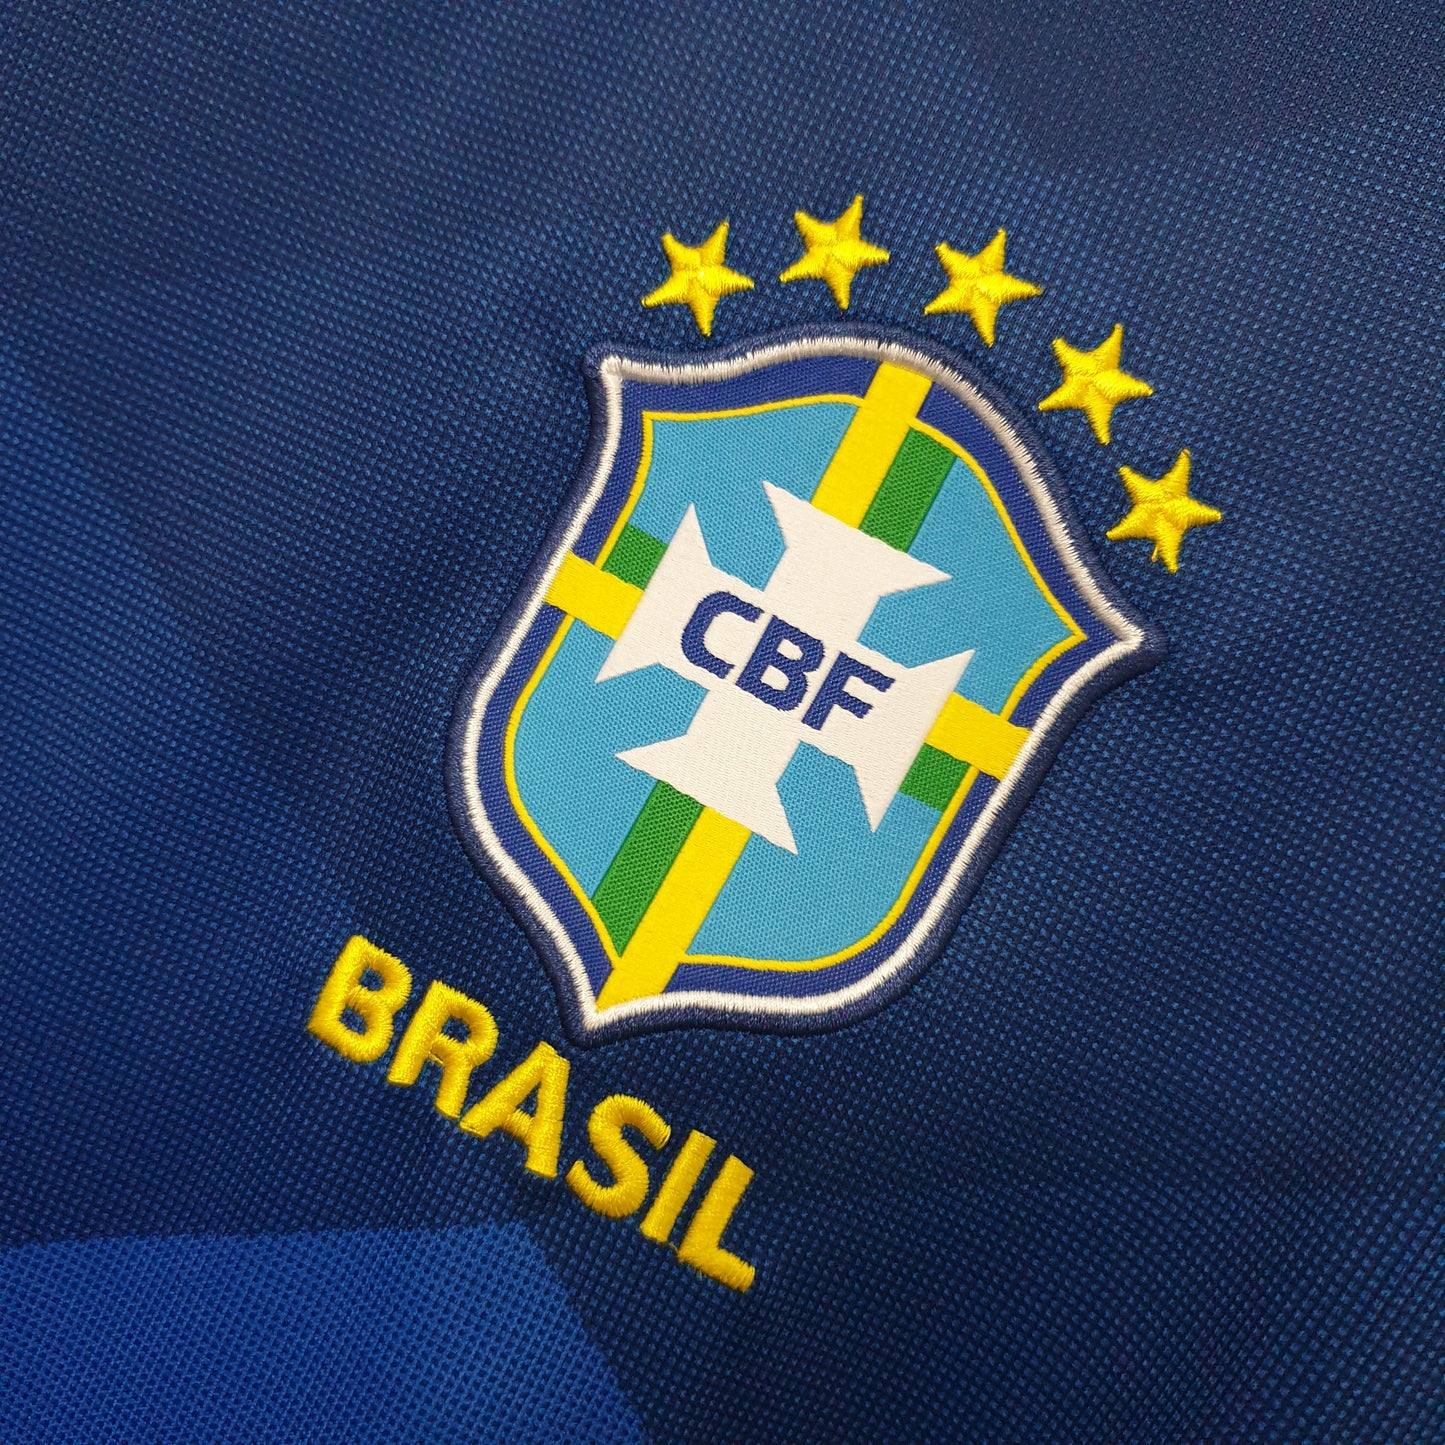 Camisa Torcedor Brasil Away 20/21